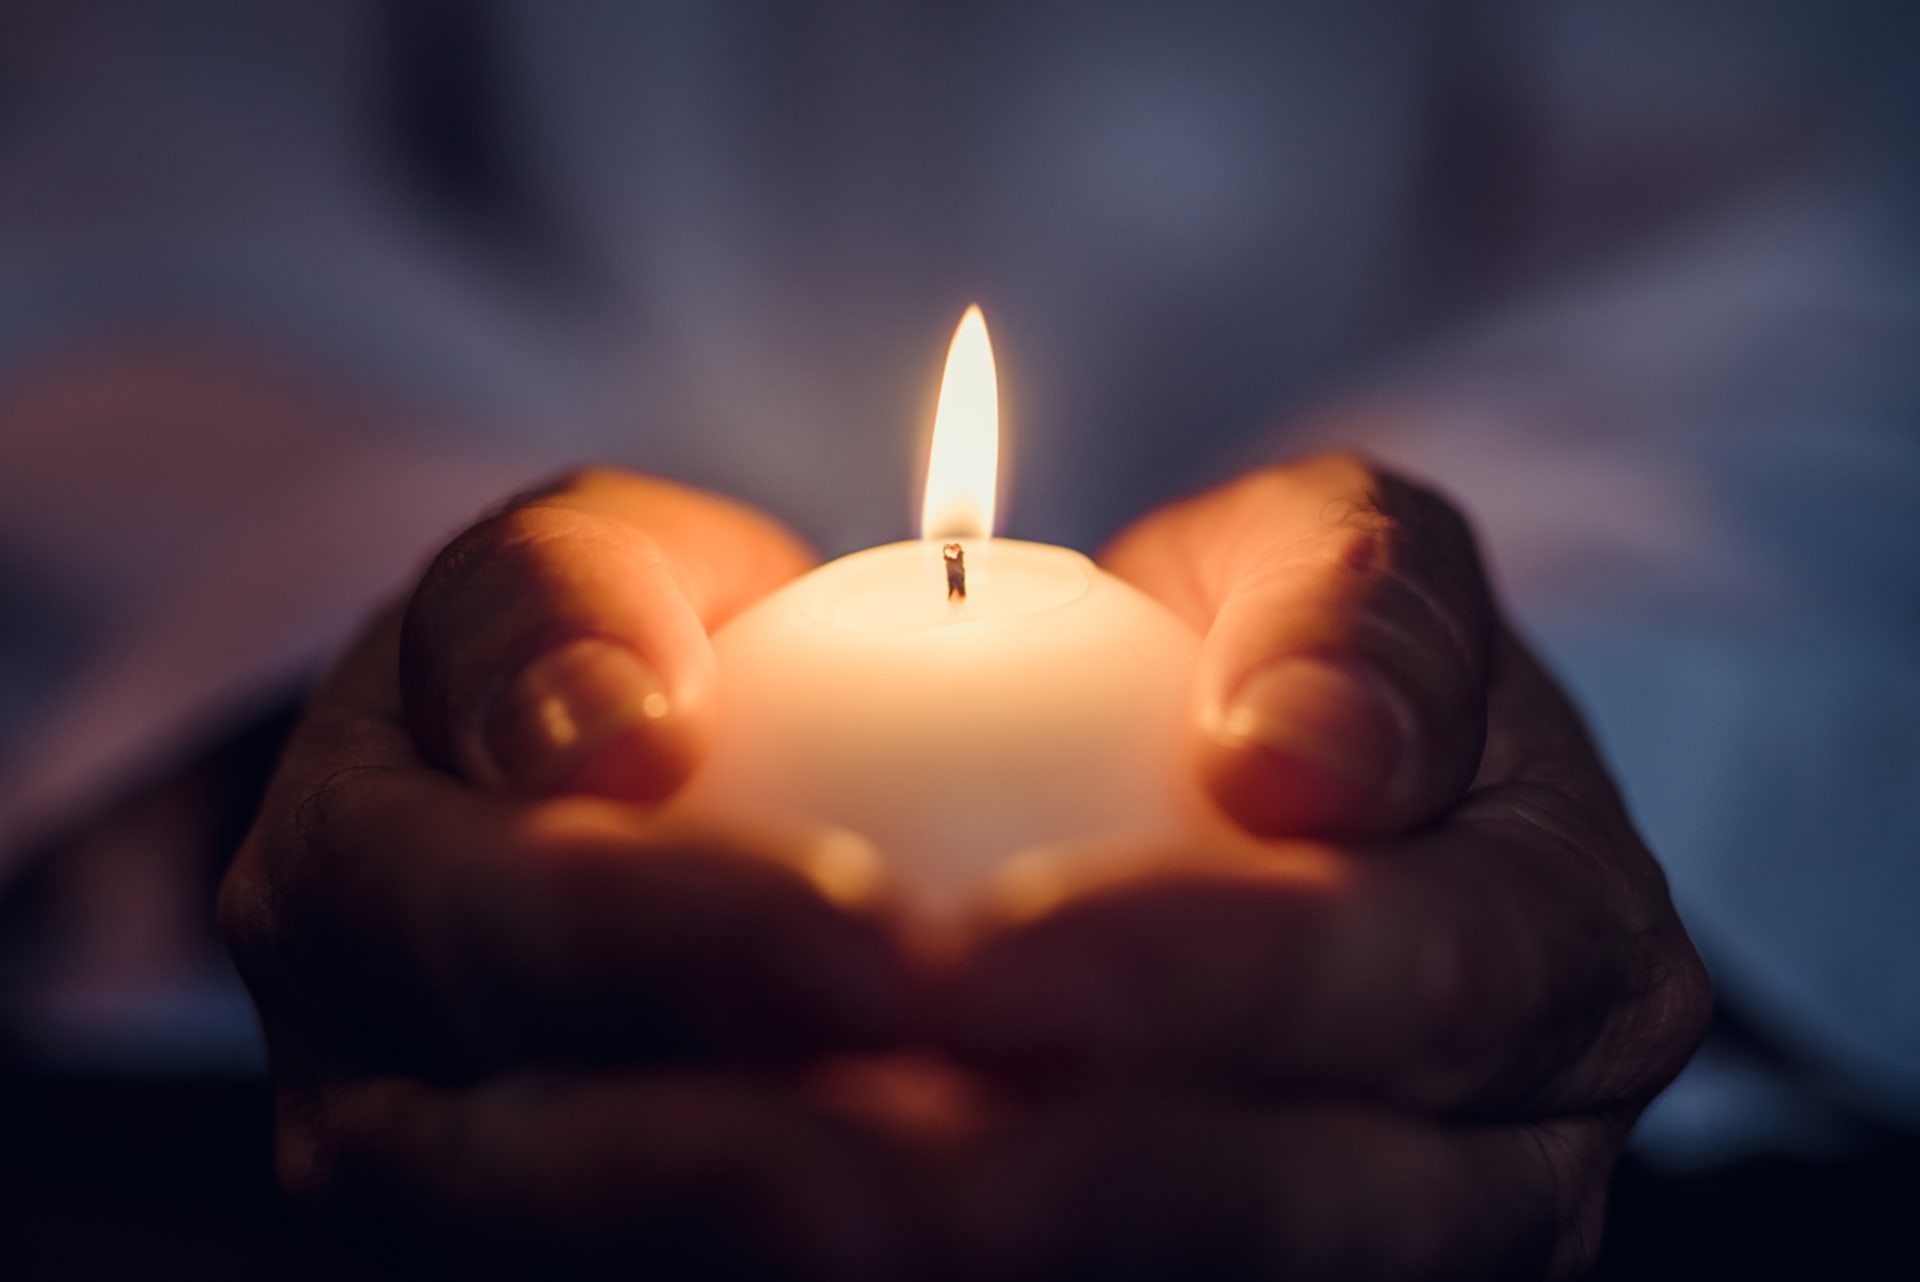 Dušičková tradice zapalovat ohně a svíčky pochází od Keltů i Slovanů, kteří věřili, že oheň očišťuje a světlo pomáhá chránit před zlými duchy